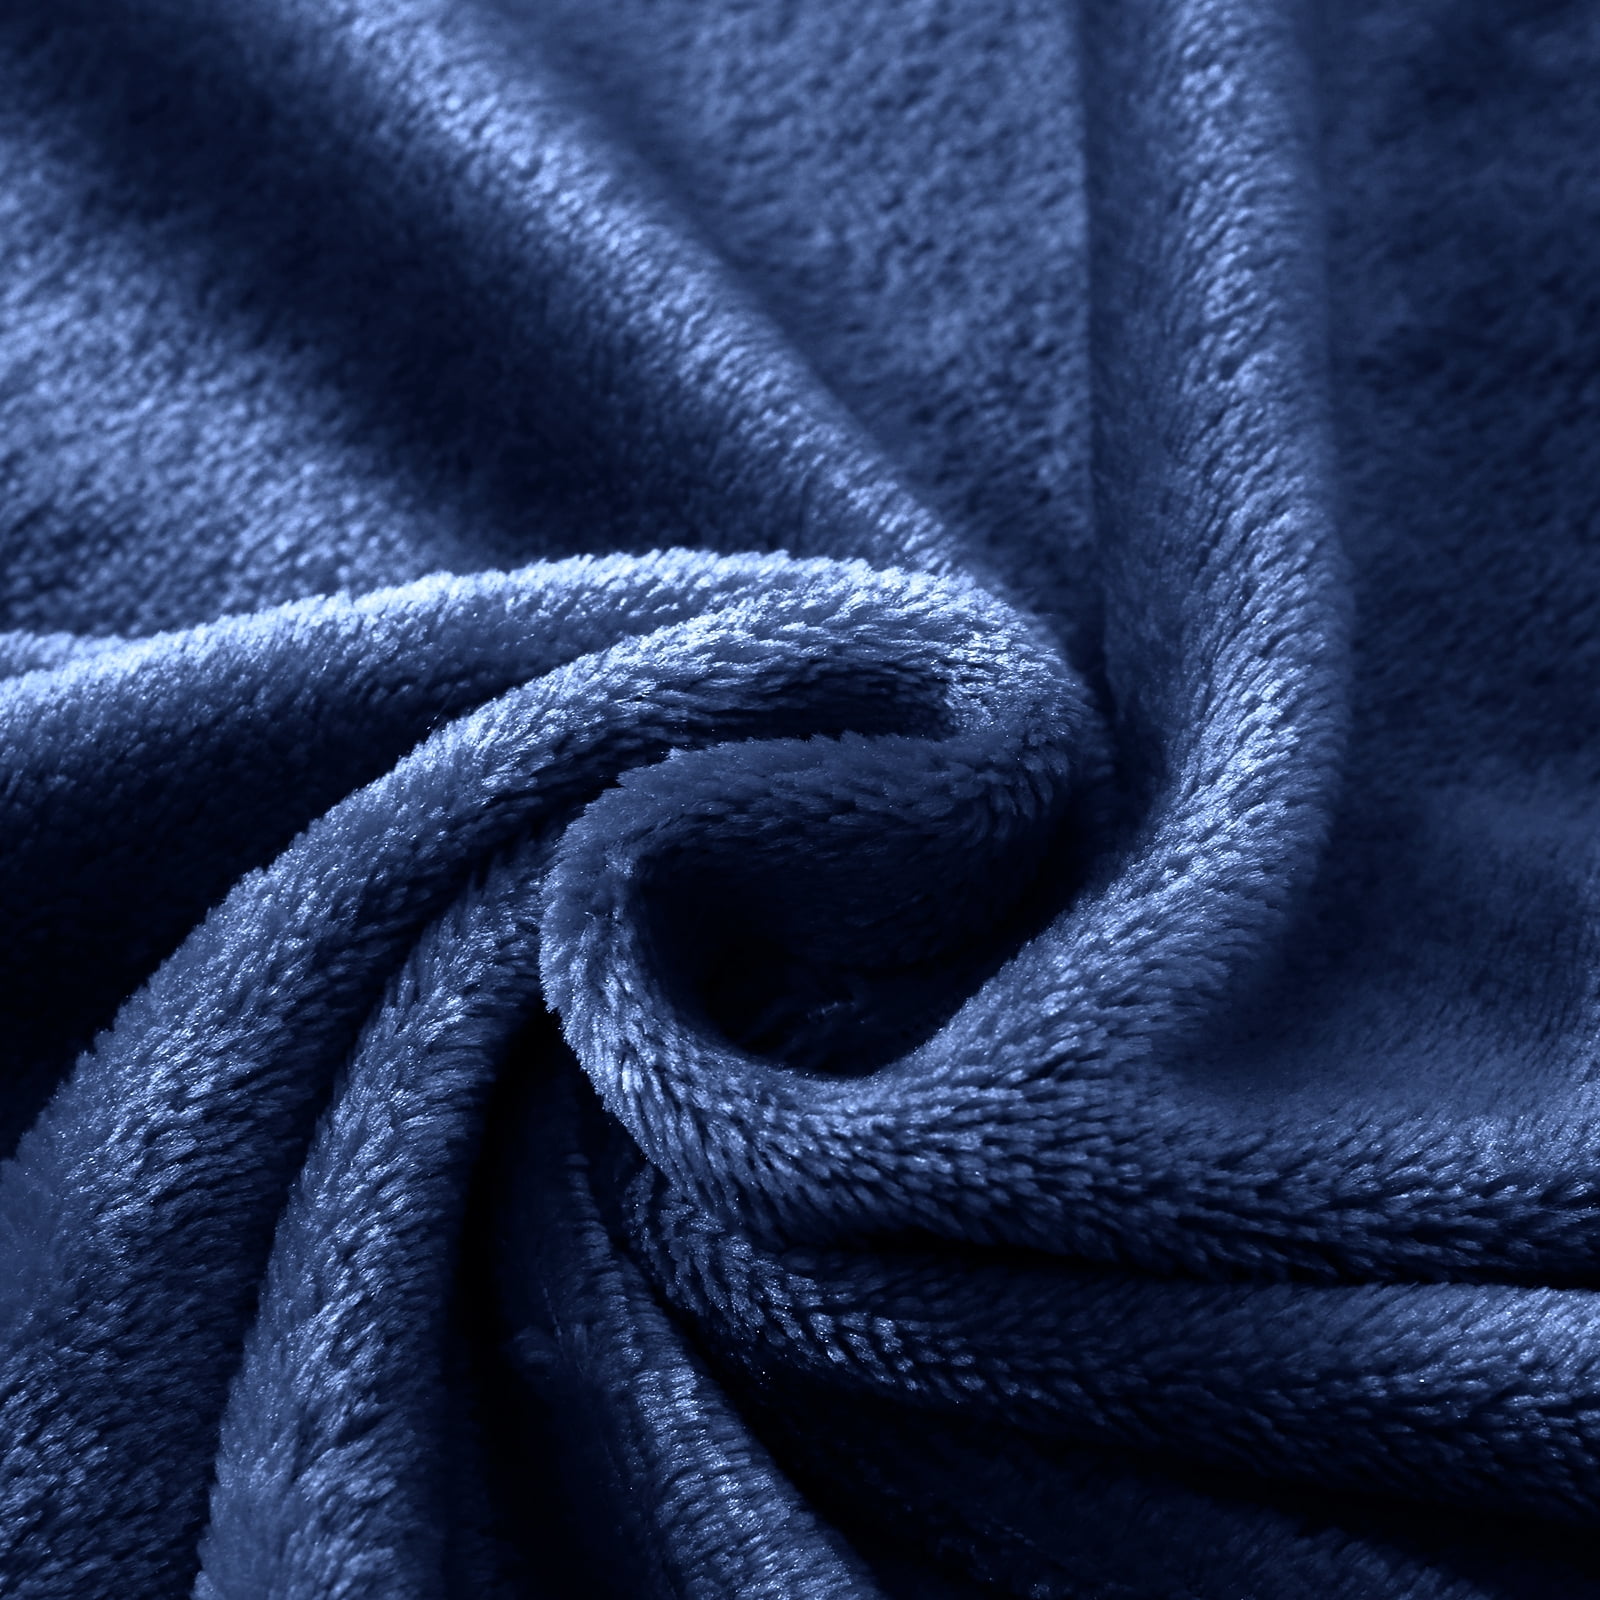 Utopia Bedding Fleece Blanket Queen Size Navy Blue Soft Luxury Microfiber - Open